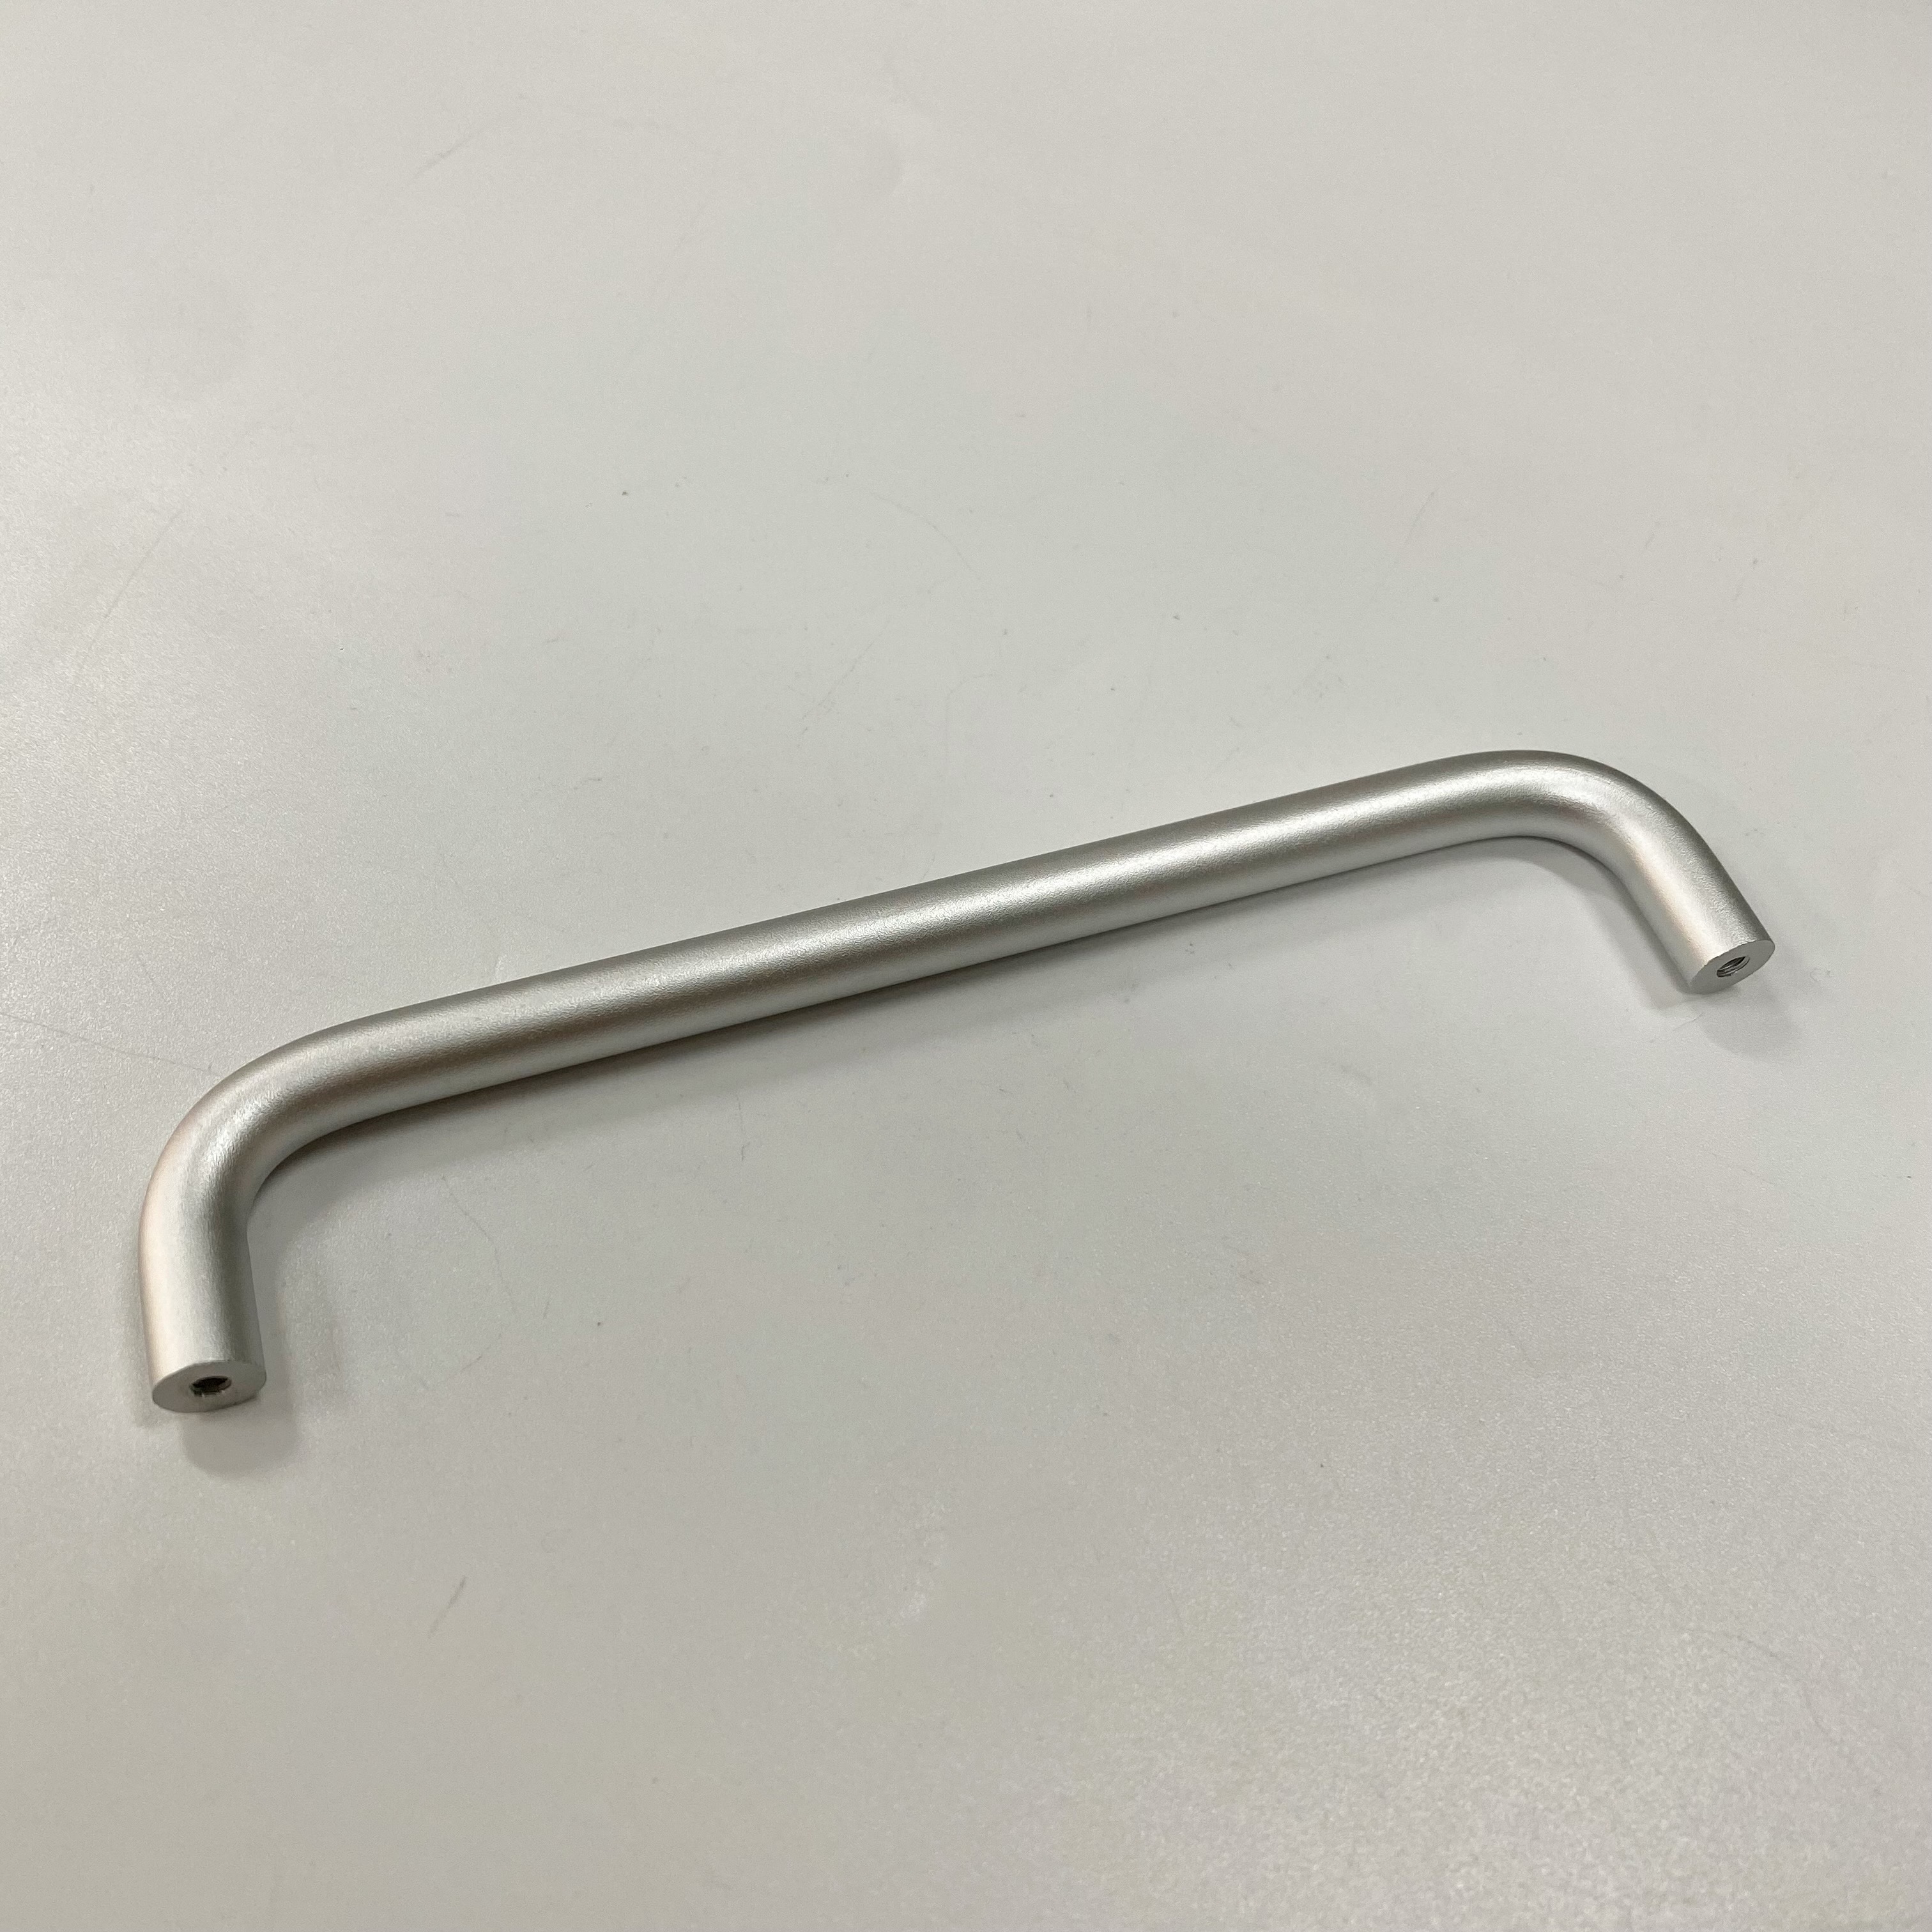 U -shaped handle